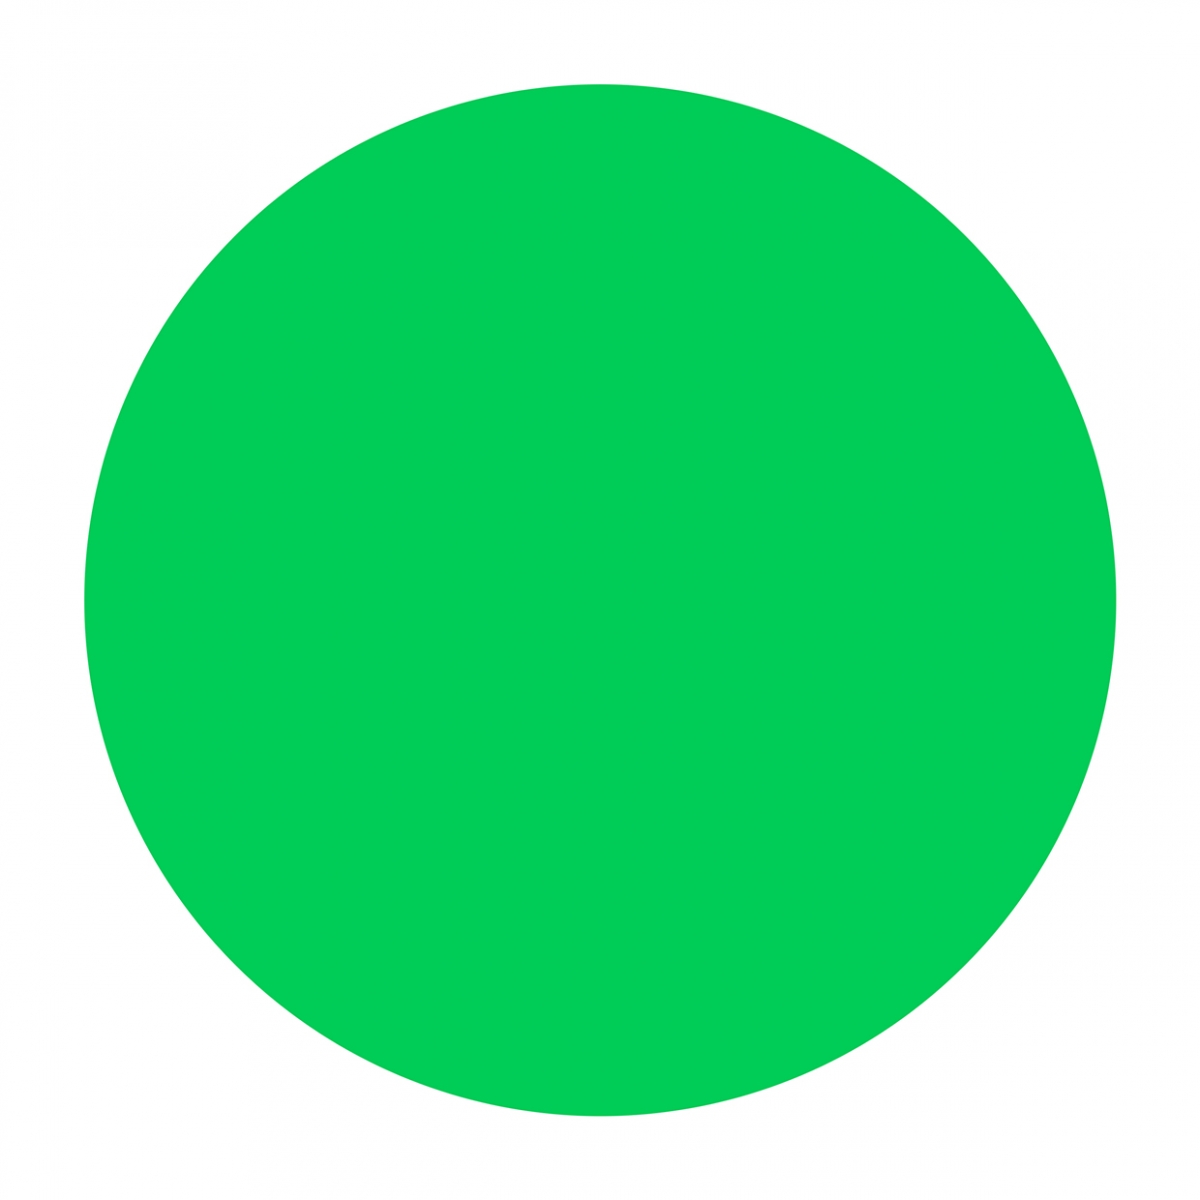 Imagen en la que se ve un círculo de color verde